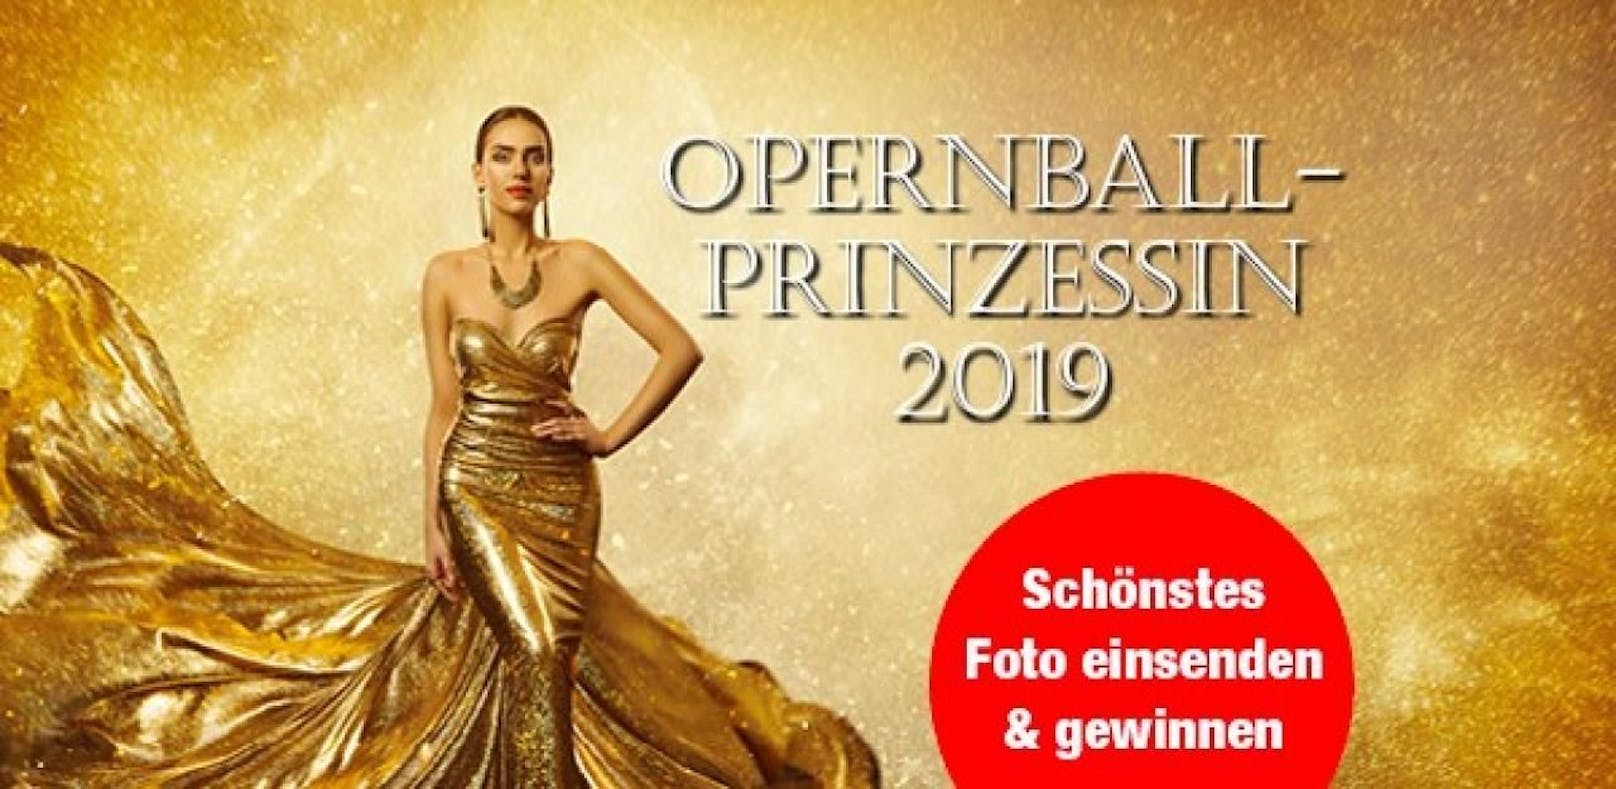 Opernballprinzessin 2019 / NUR NOCH BIS SAMSTAG 09. Februar 2019